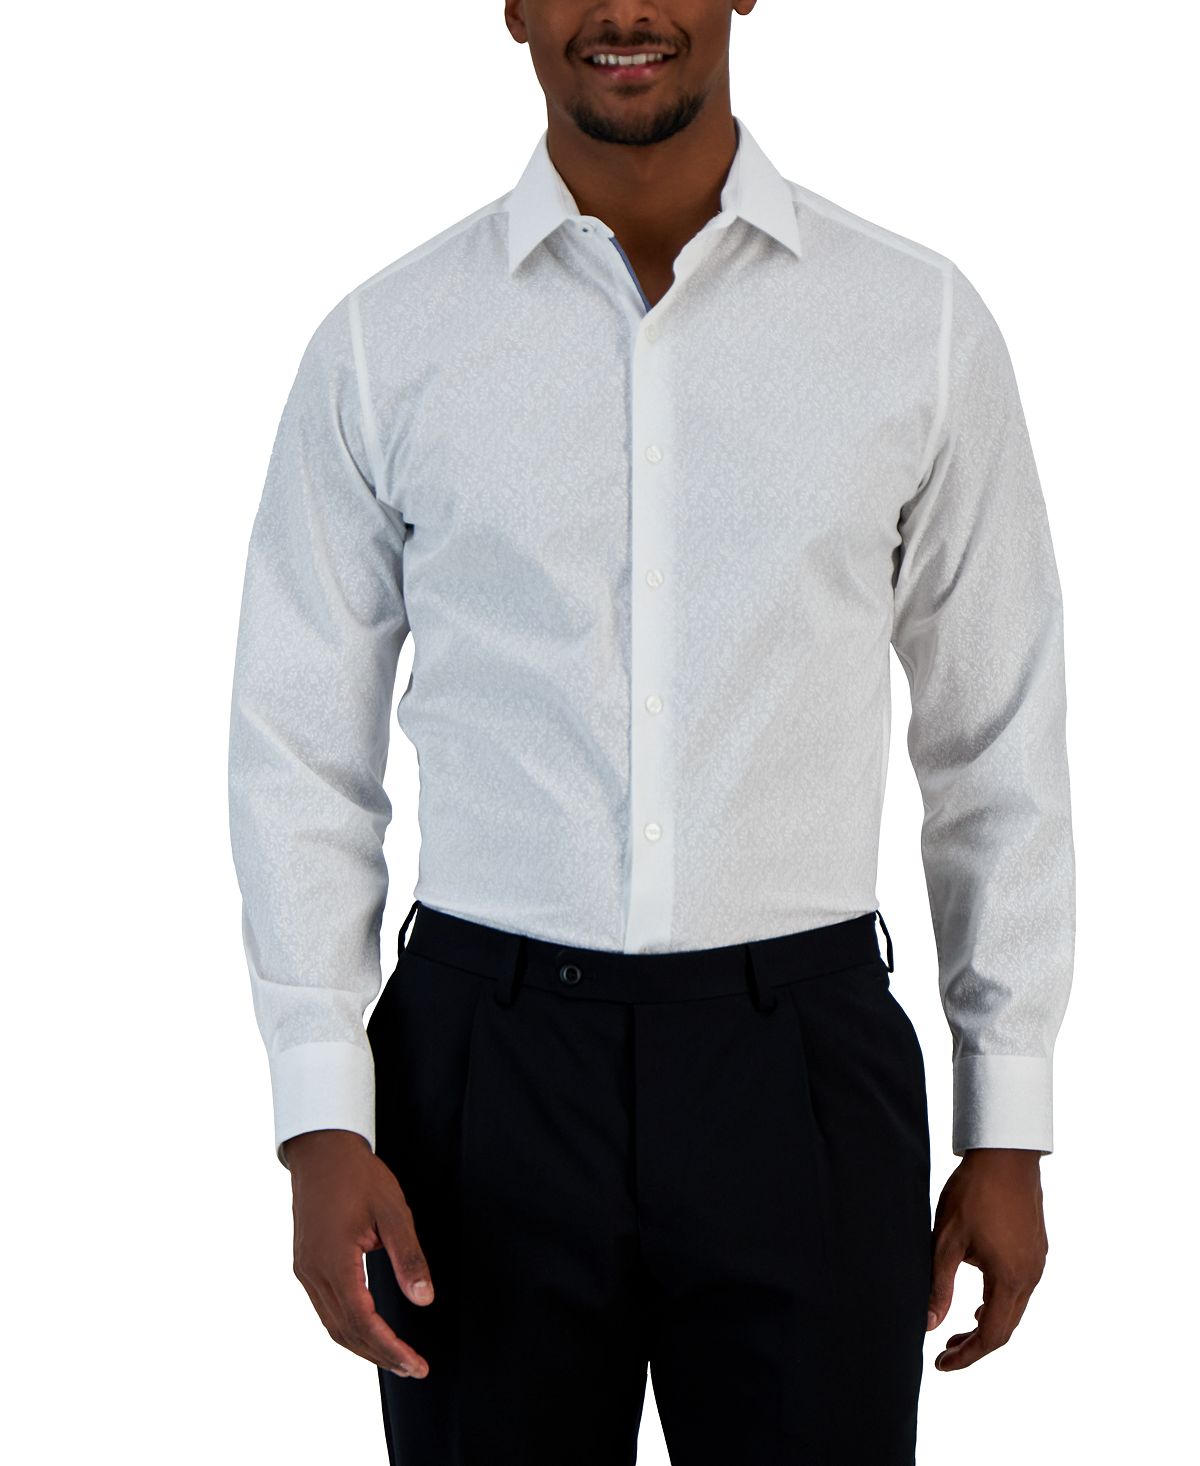 Мужская классическая рубашка узкого кроя с принтом виноградной лозы Bar III